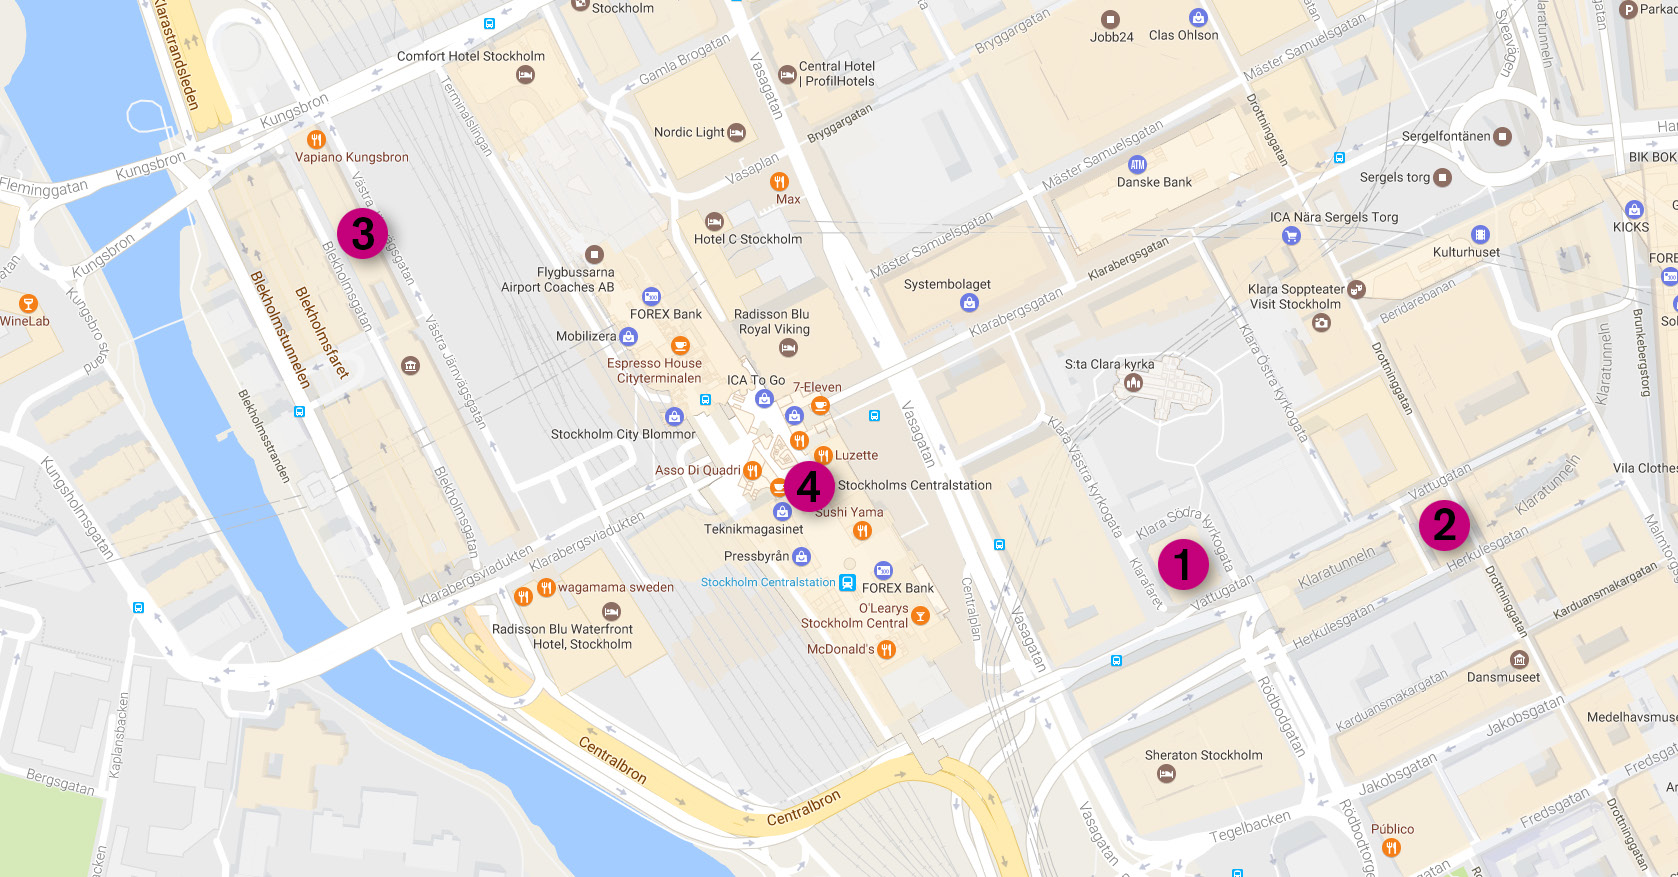 Här händer det Kartpunkter 1. Sensus möte samt utbildningslokal, Klara Södra kyrkogata 1, 111 52 Stockholm 2. Restaurang Waipo, middag lördag, Drottninggatan 25, 111 51 Stockholm 3.